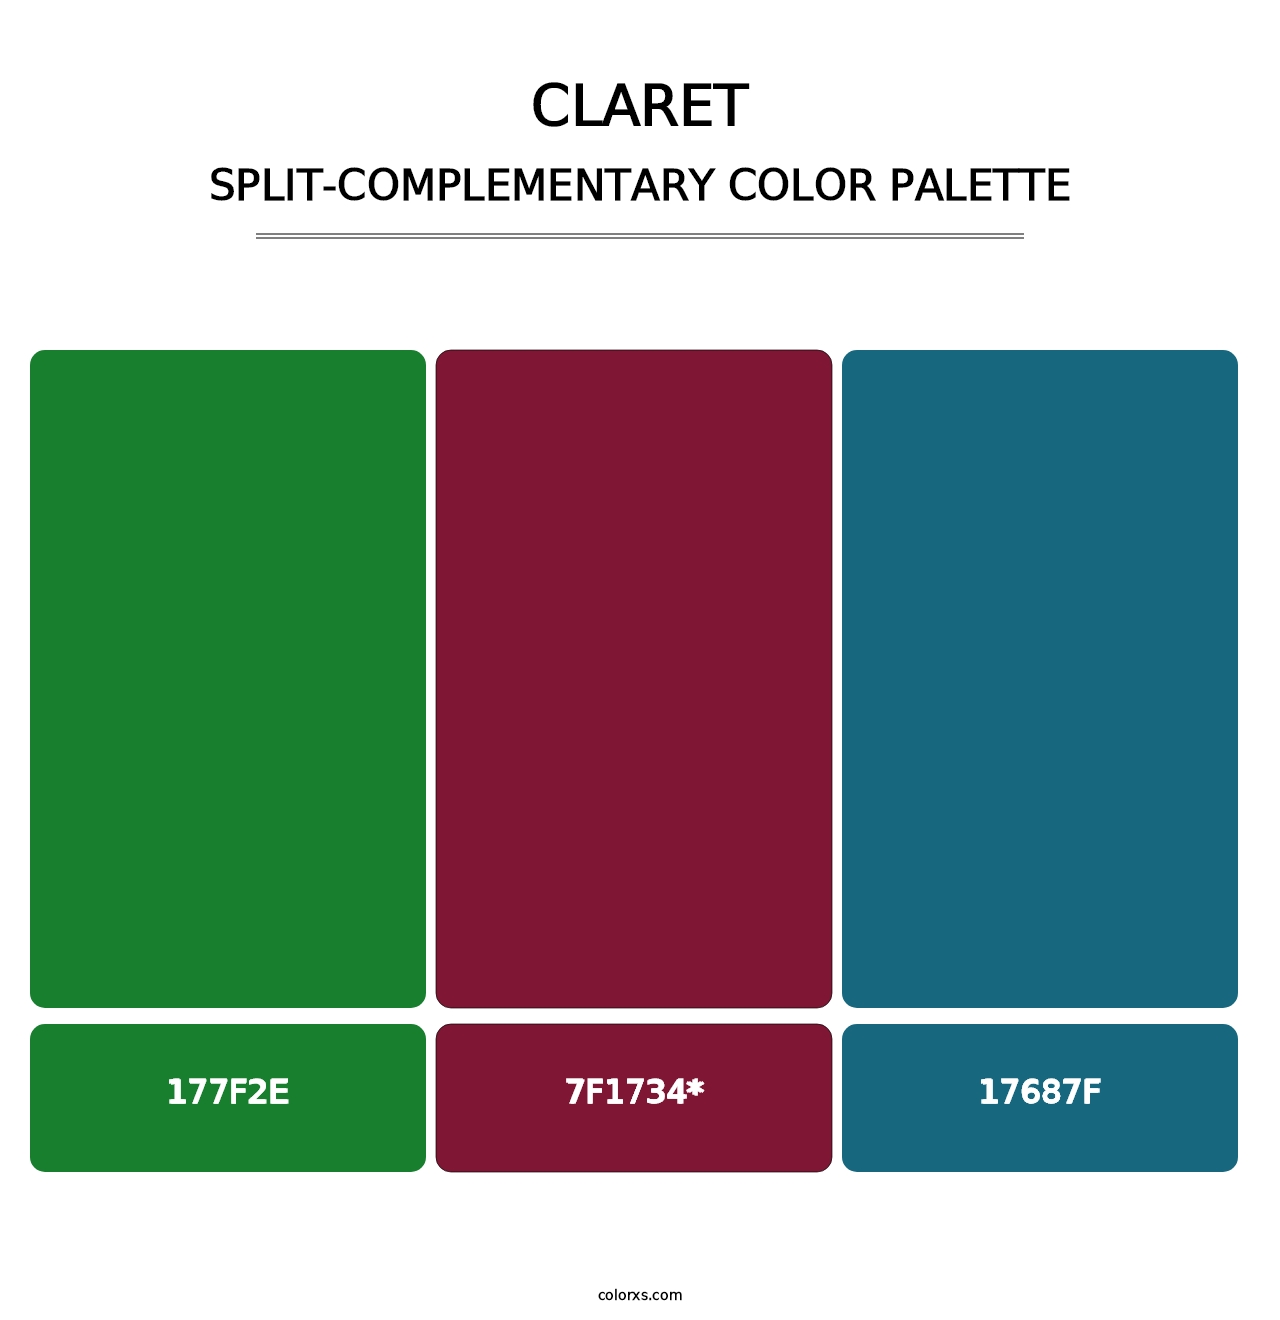 Claret - Split-Complementary Color Palette